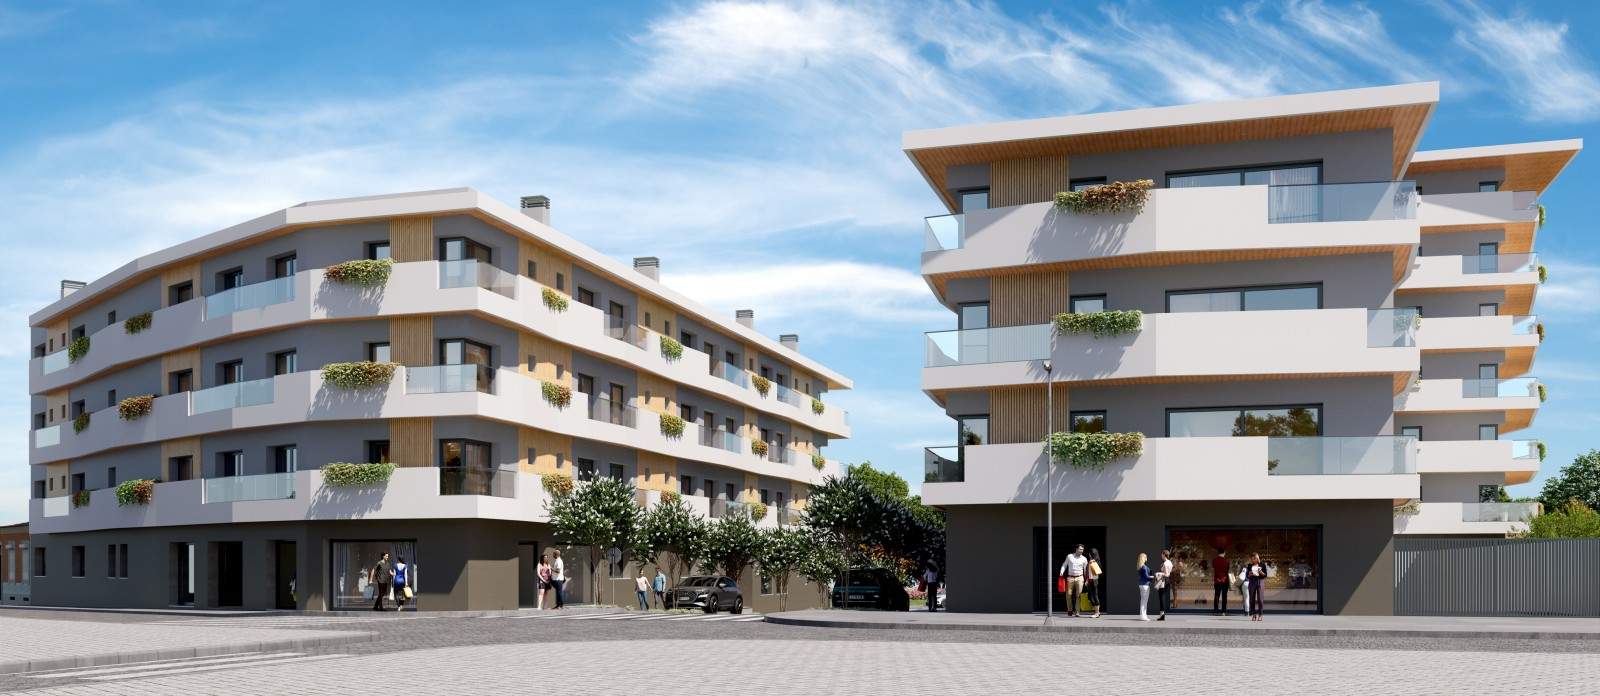 Neue Wohnung mit Balkon, zu verkaufen, in Ramalde, Porto_211555